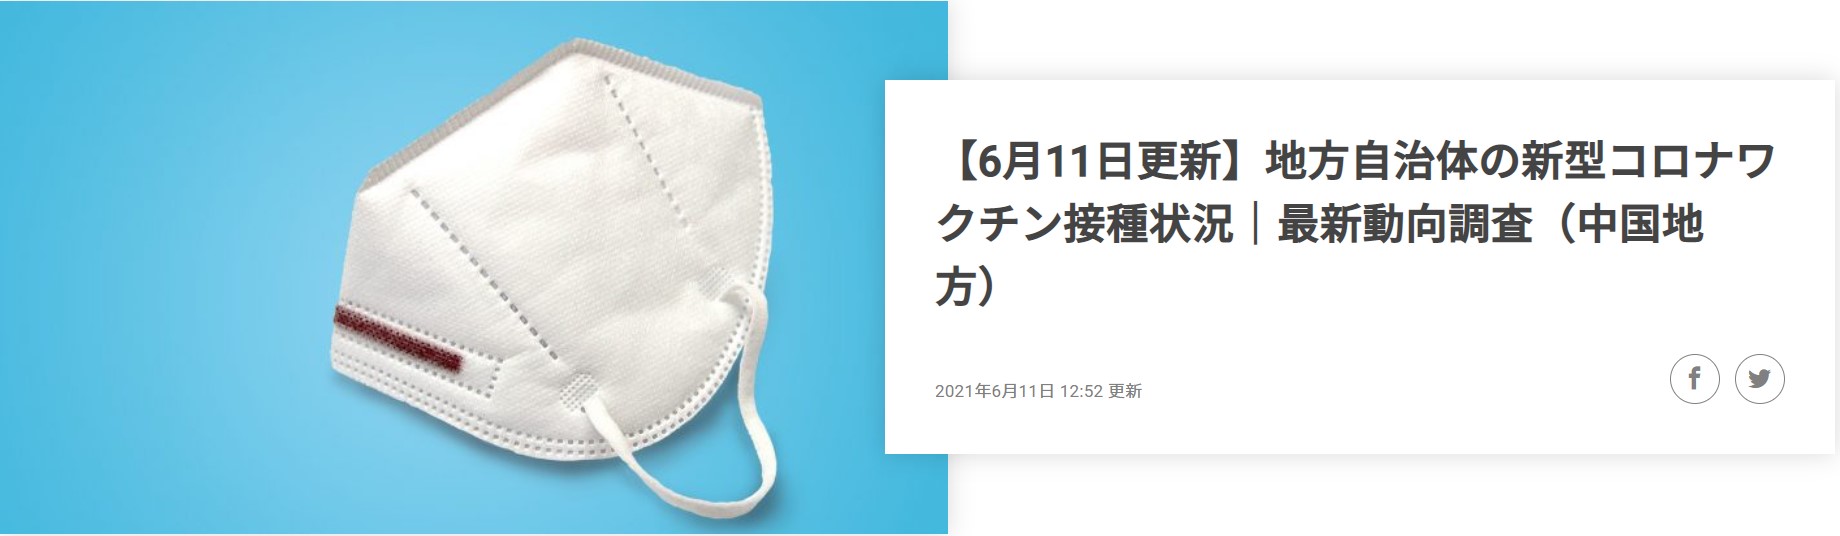 21年6月11日発表 岡山県の新型コロナワクチンの接種状況 最新動向レポートを公開 株式会社コントロールテクノロジーのプレスリリース